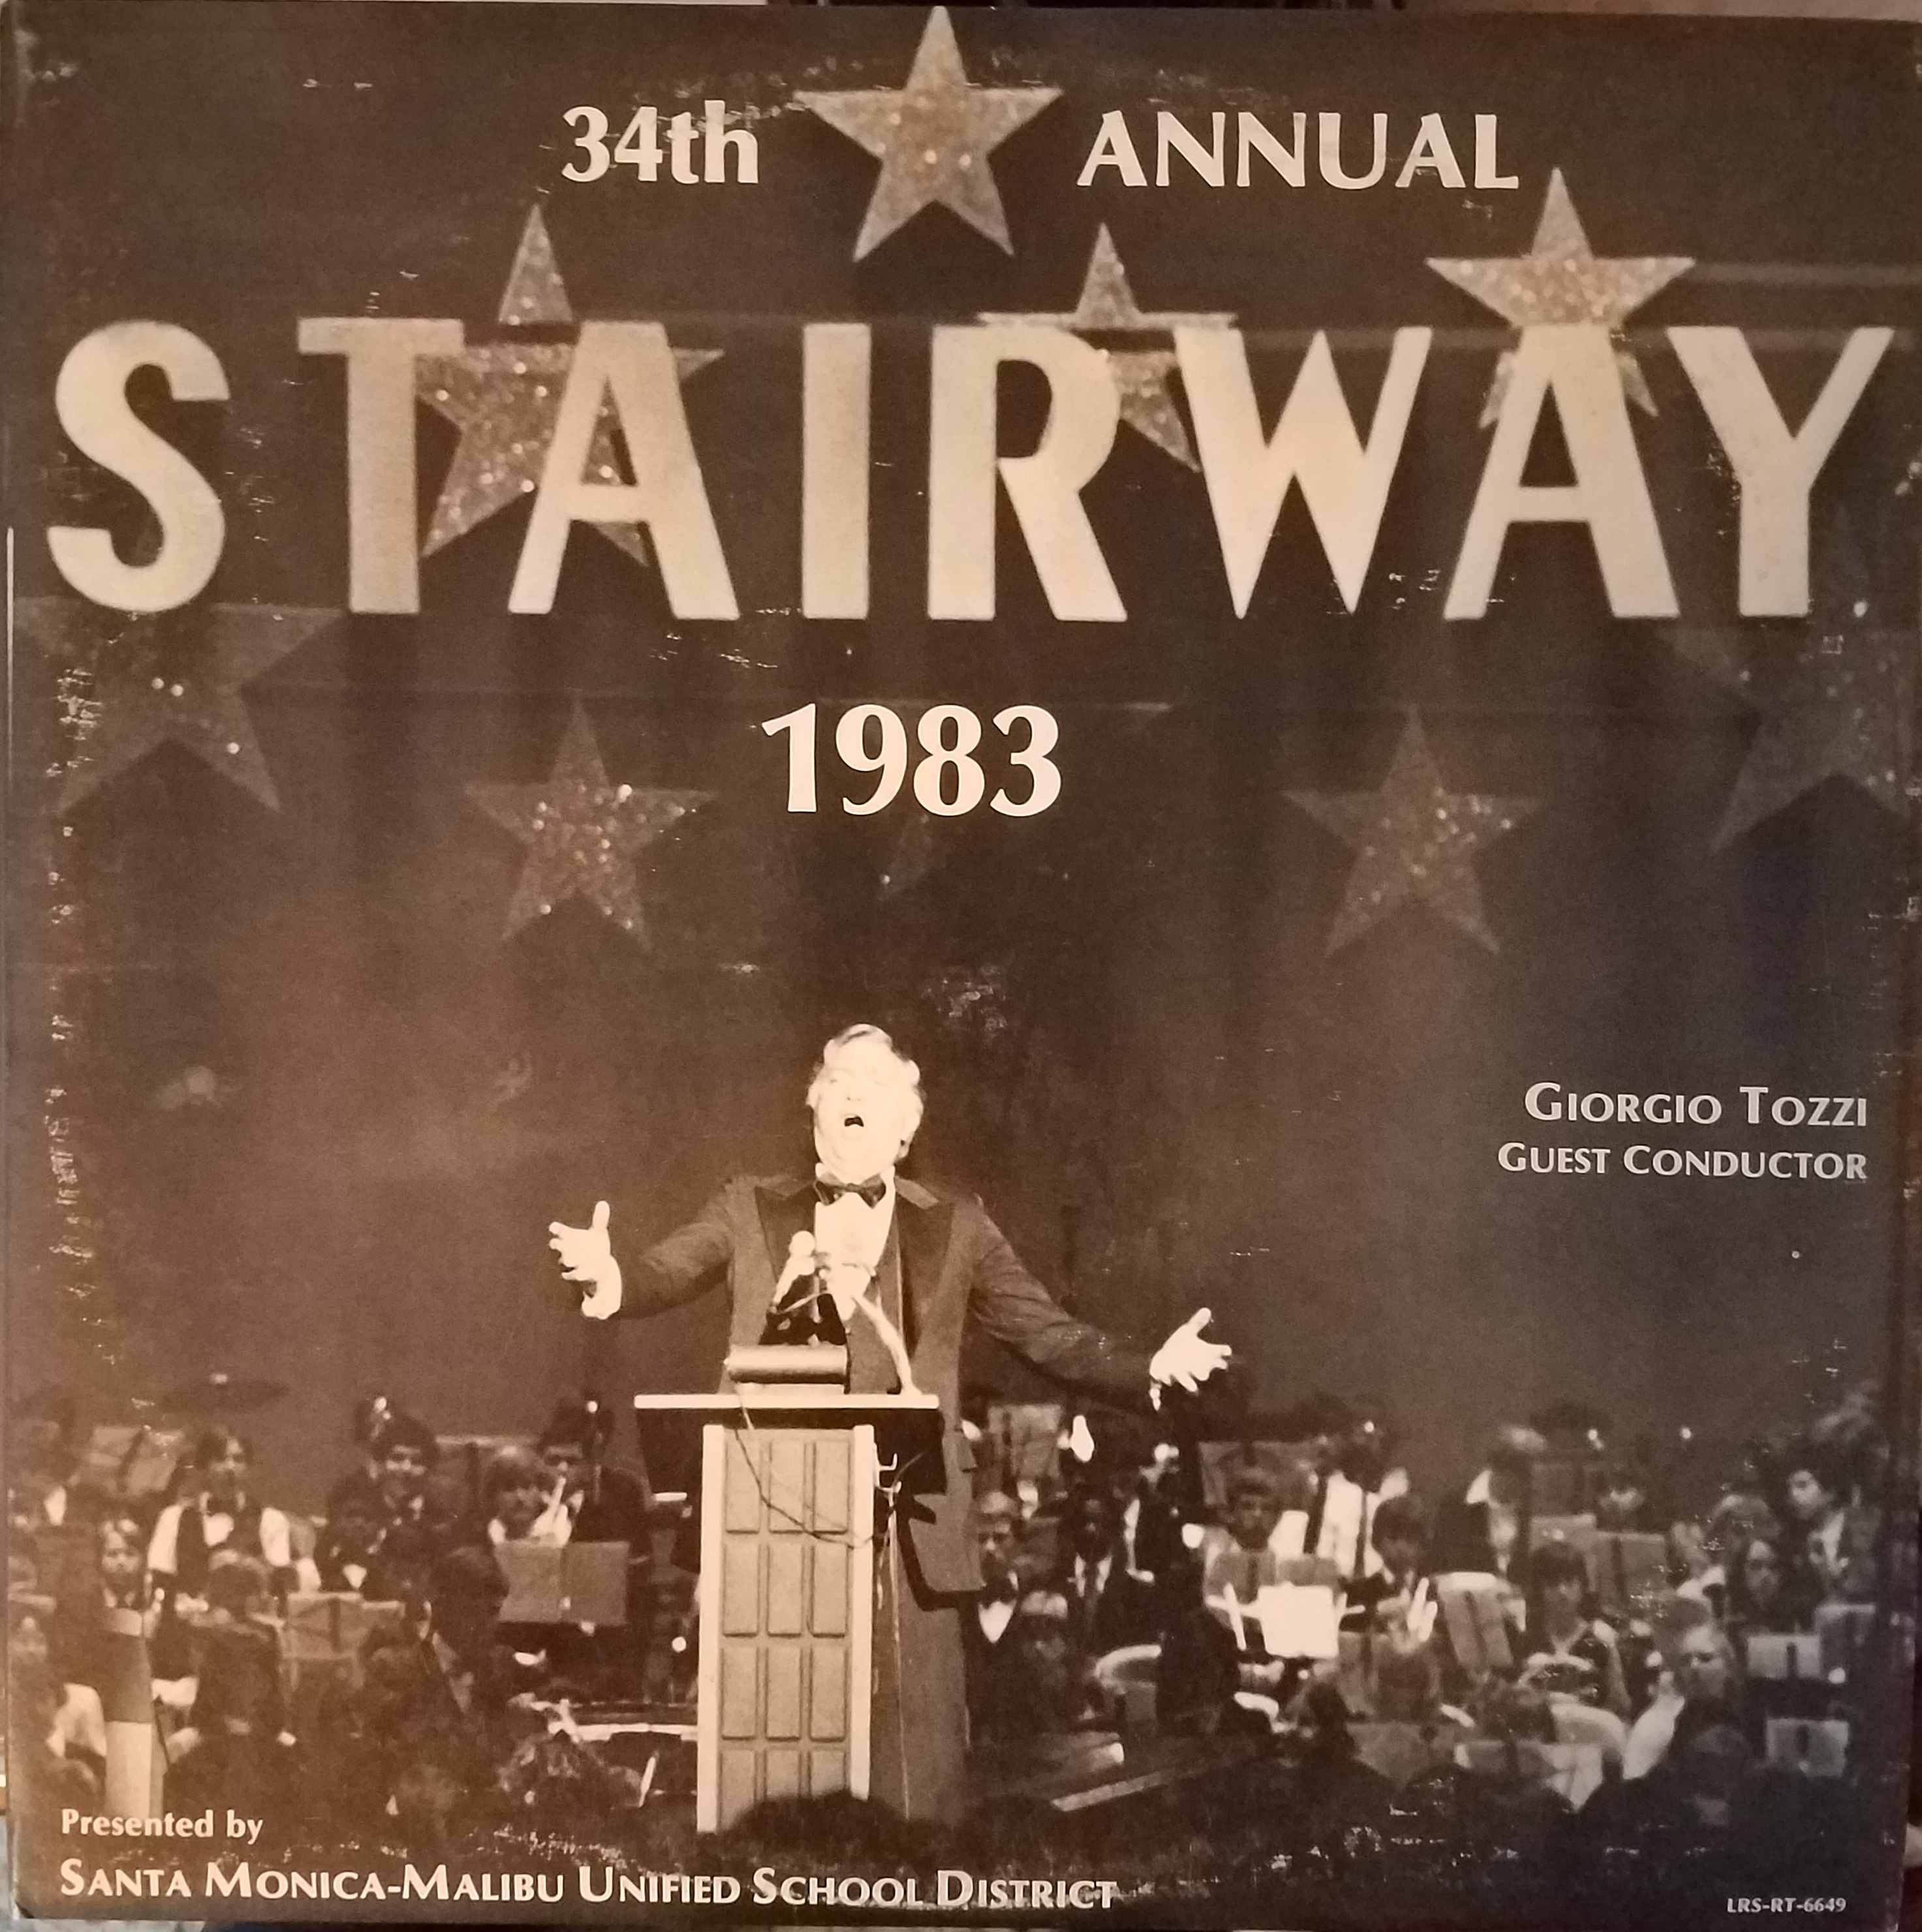 1983 Album cover